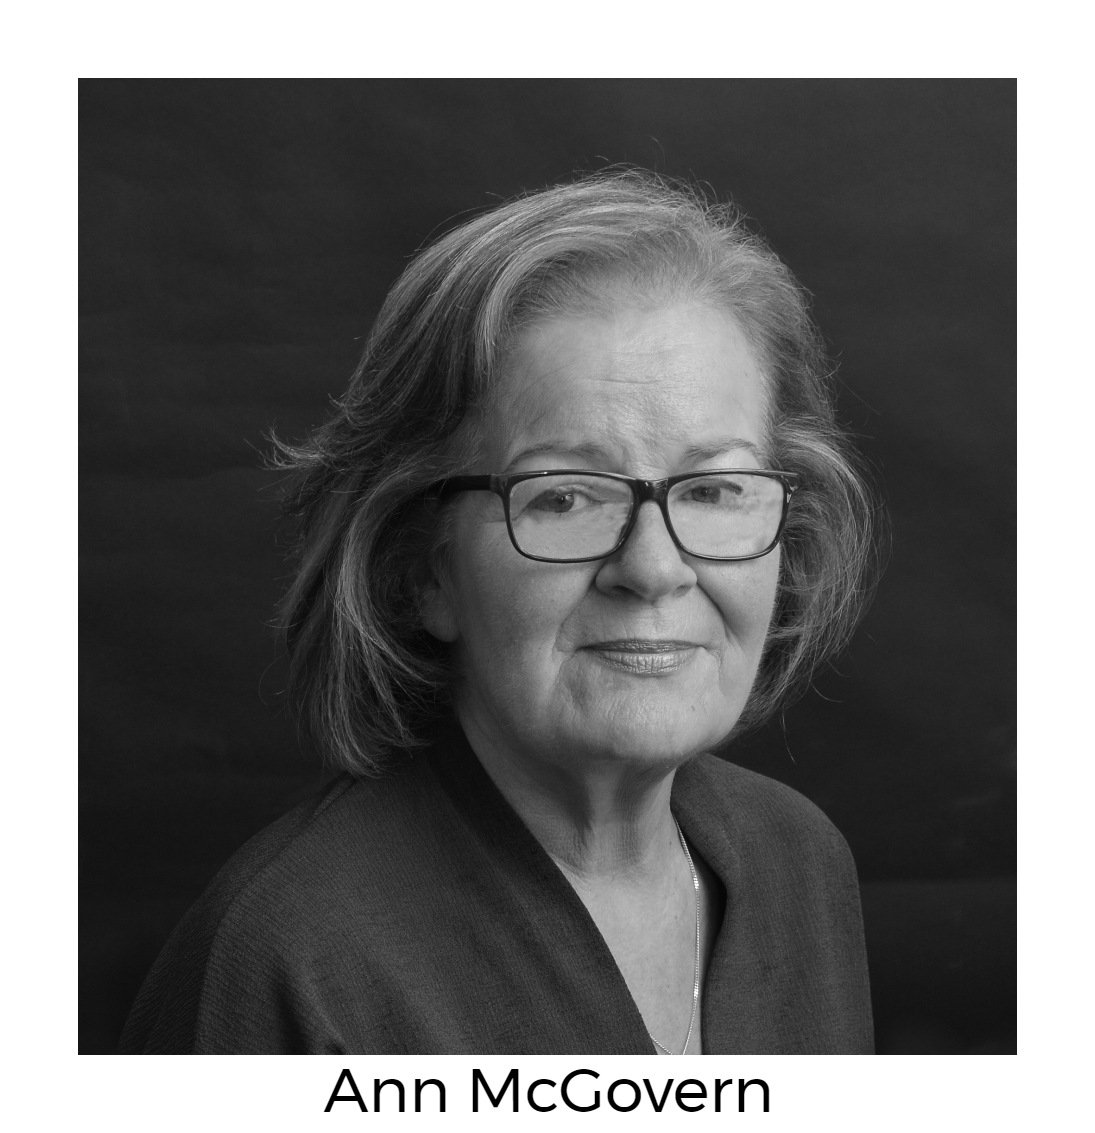 Ann McGovern